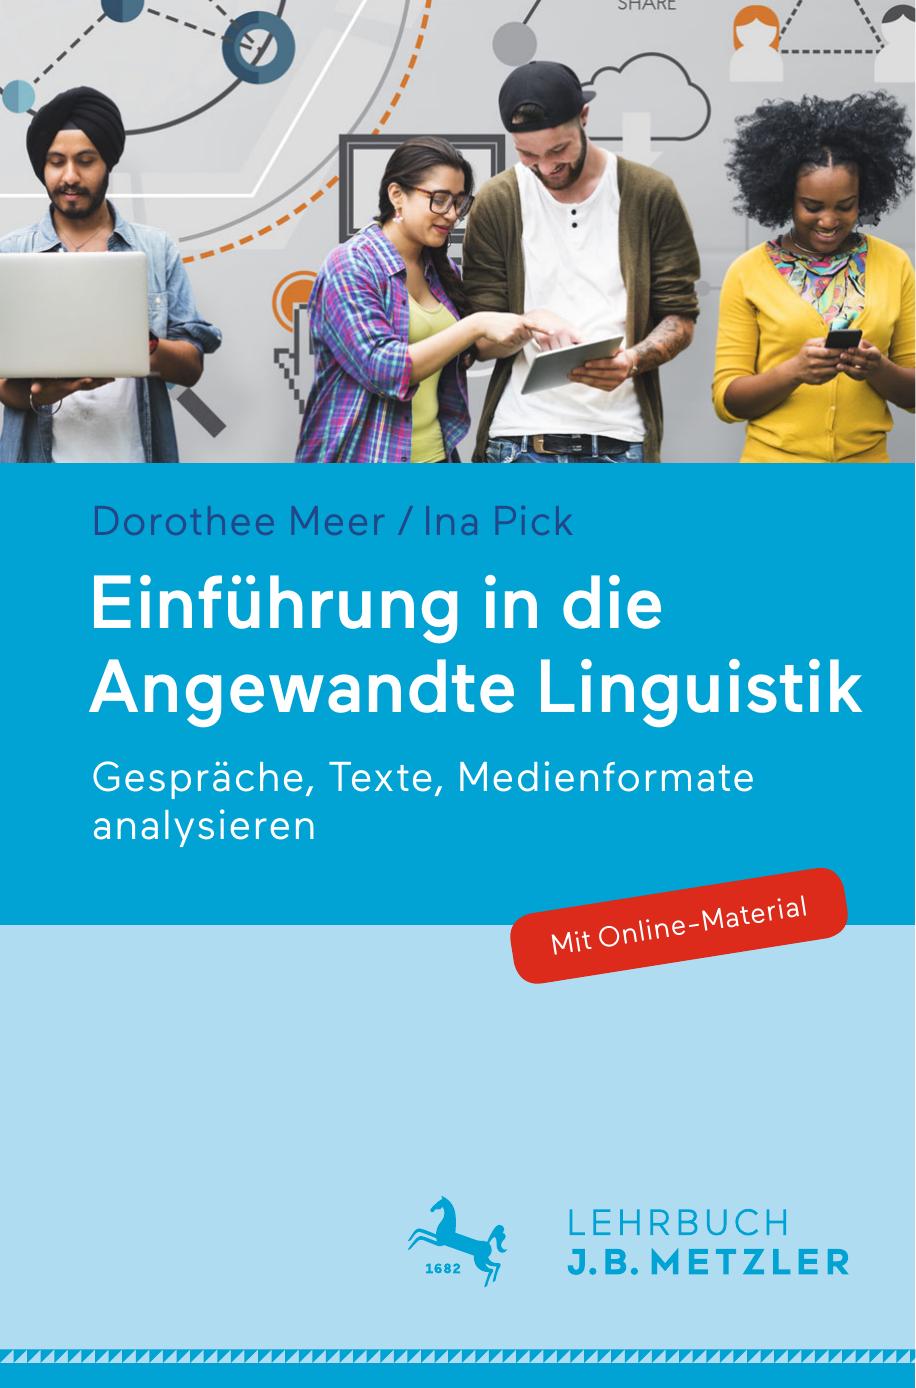 Einführung in die Angewandte Linguistik: Gespräche, Texte, Medienformate analysieren